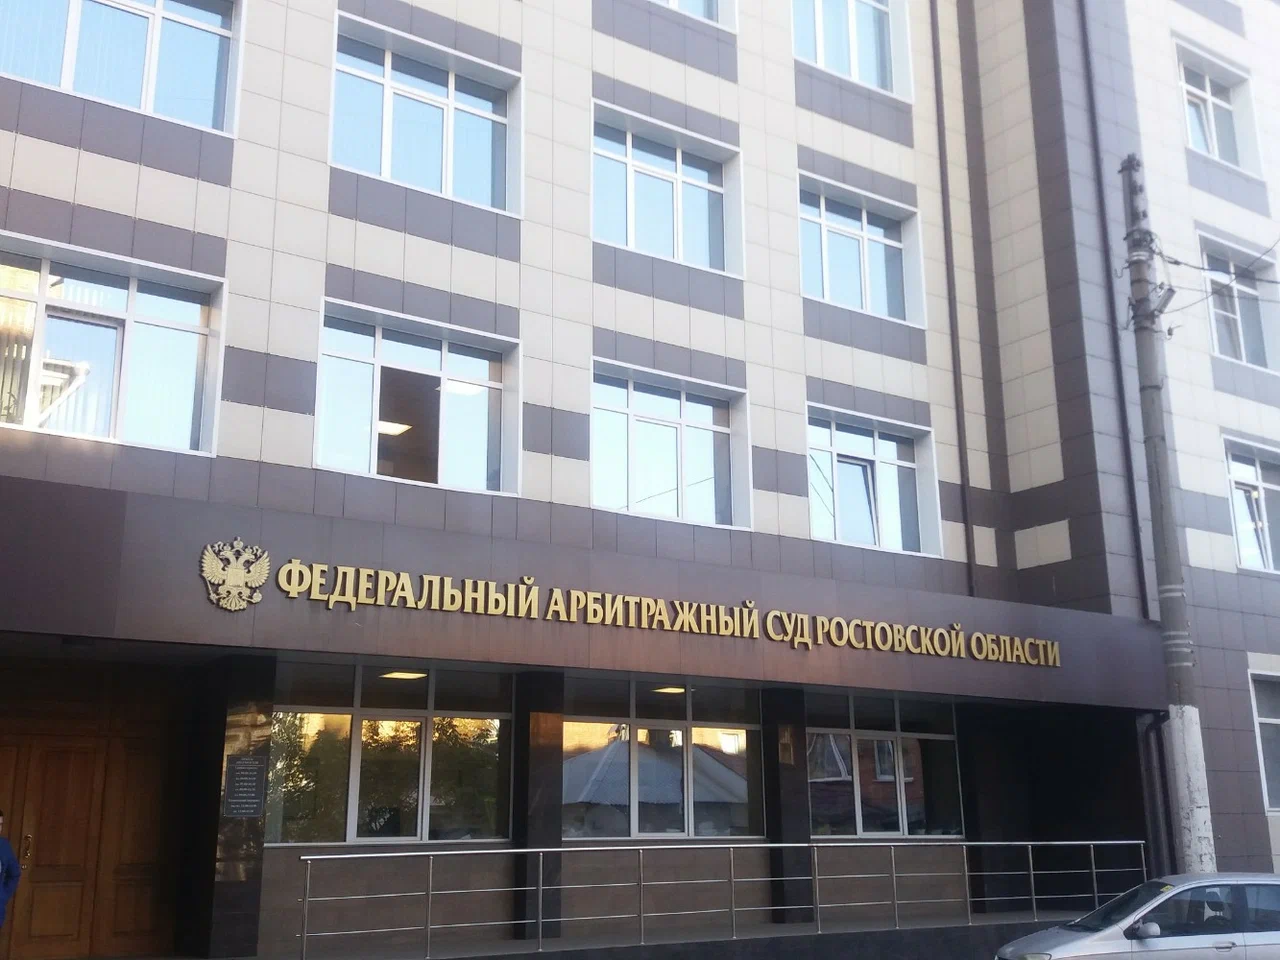  «Ростовский бройлер» привлечён судом к ответственности за содержание лекарственных препаратов в продукции